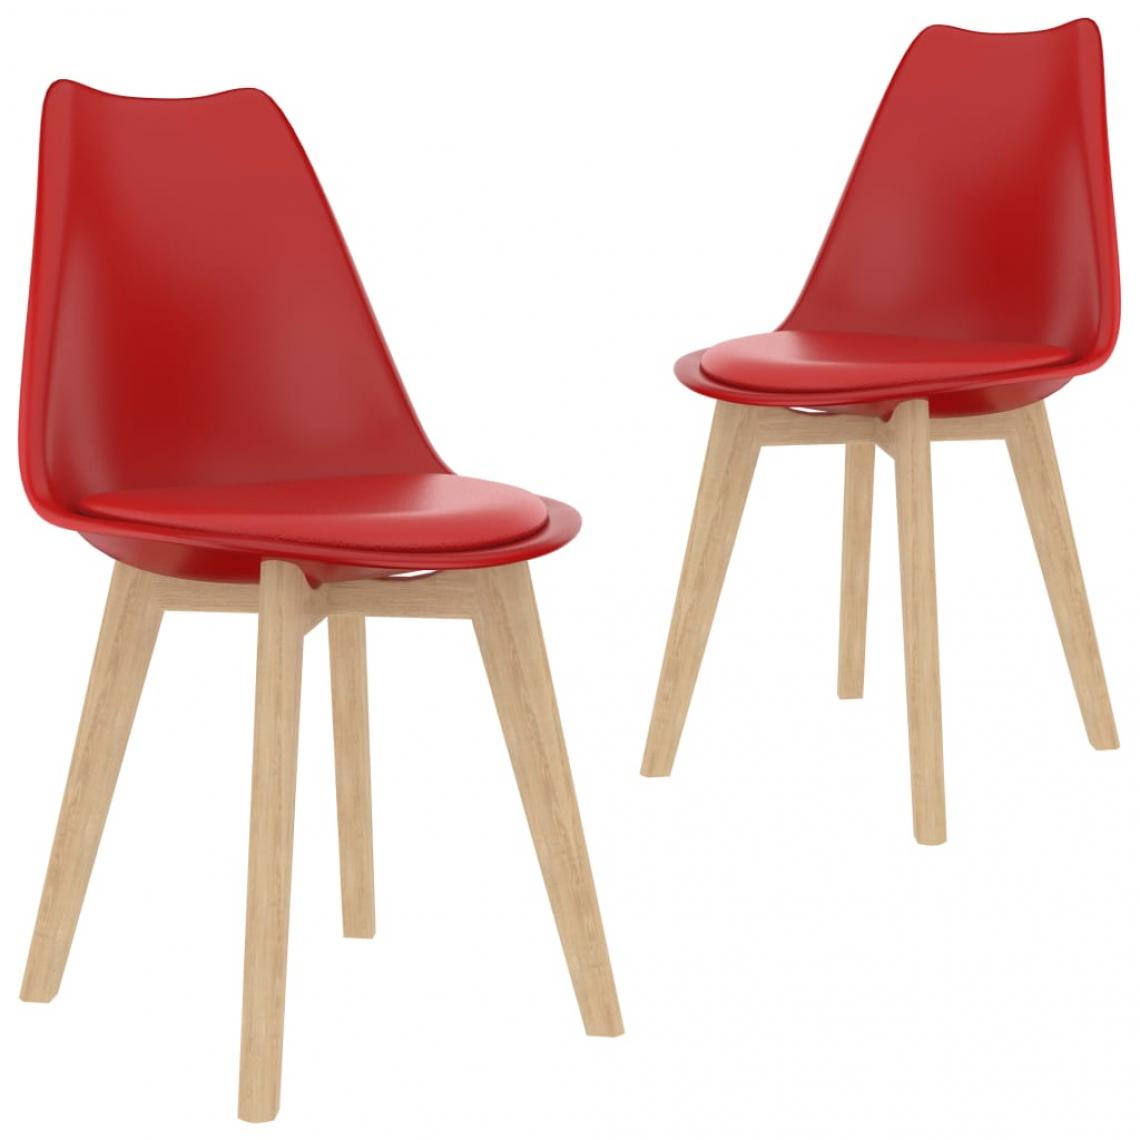 Decoshop26 - Lot de 2 chaises de salle à manger cuisine design moderne plastique rouge CDS021021 - Chaises